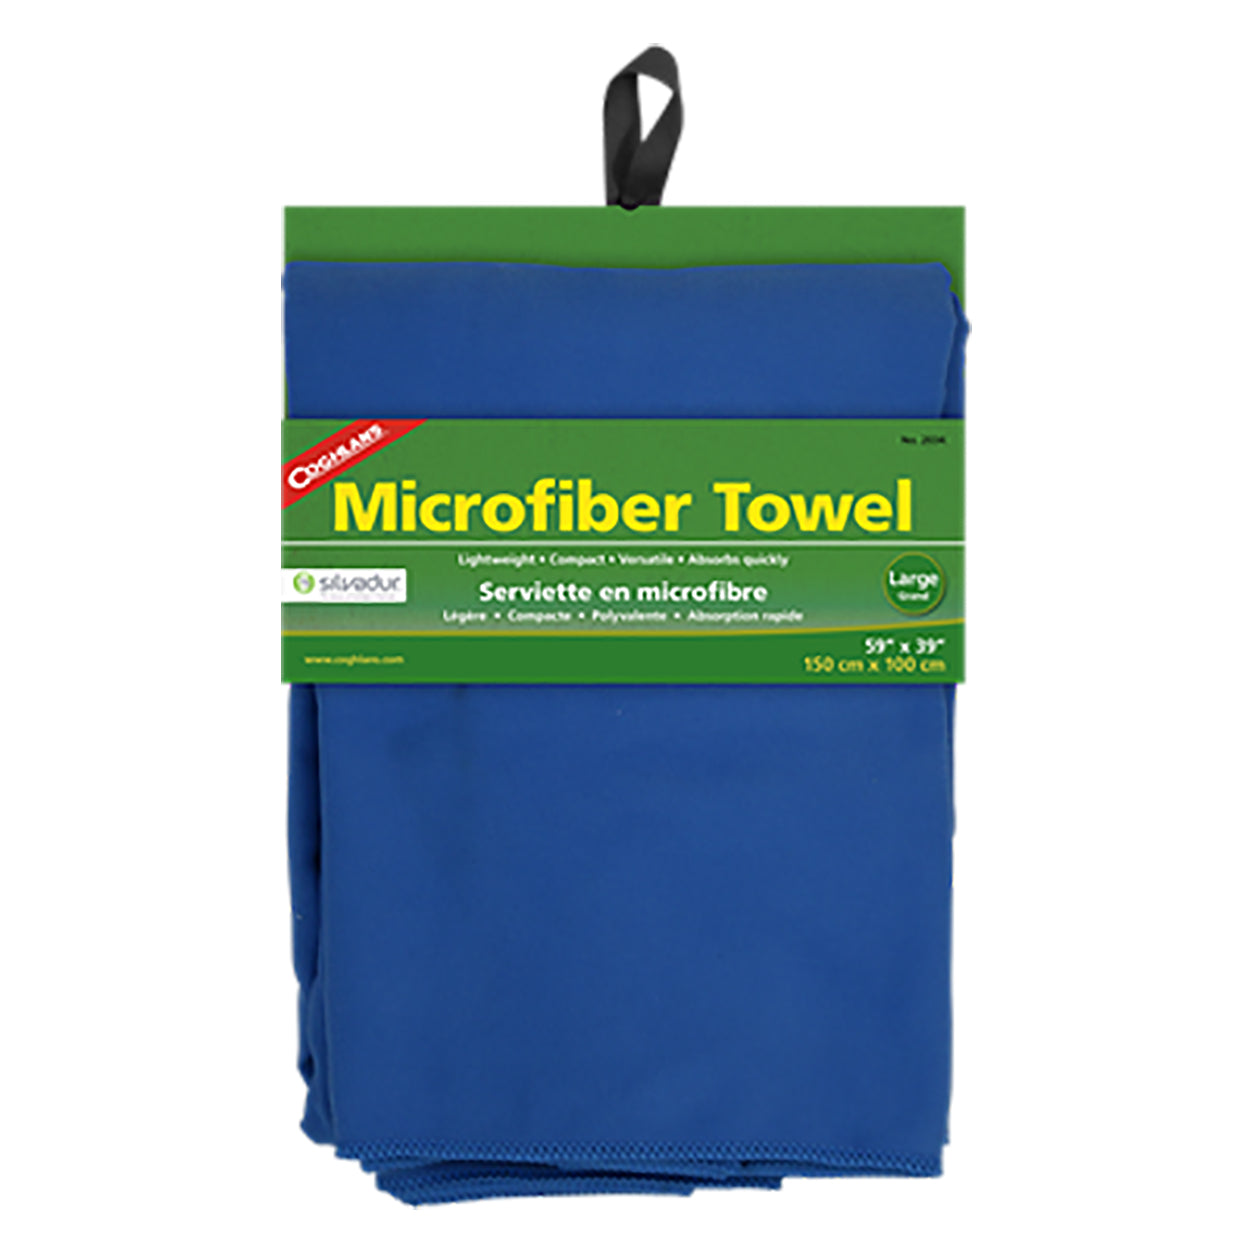 Microfiber Towel 2032 and 2034